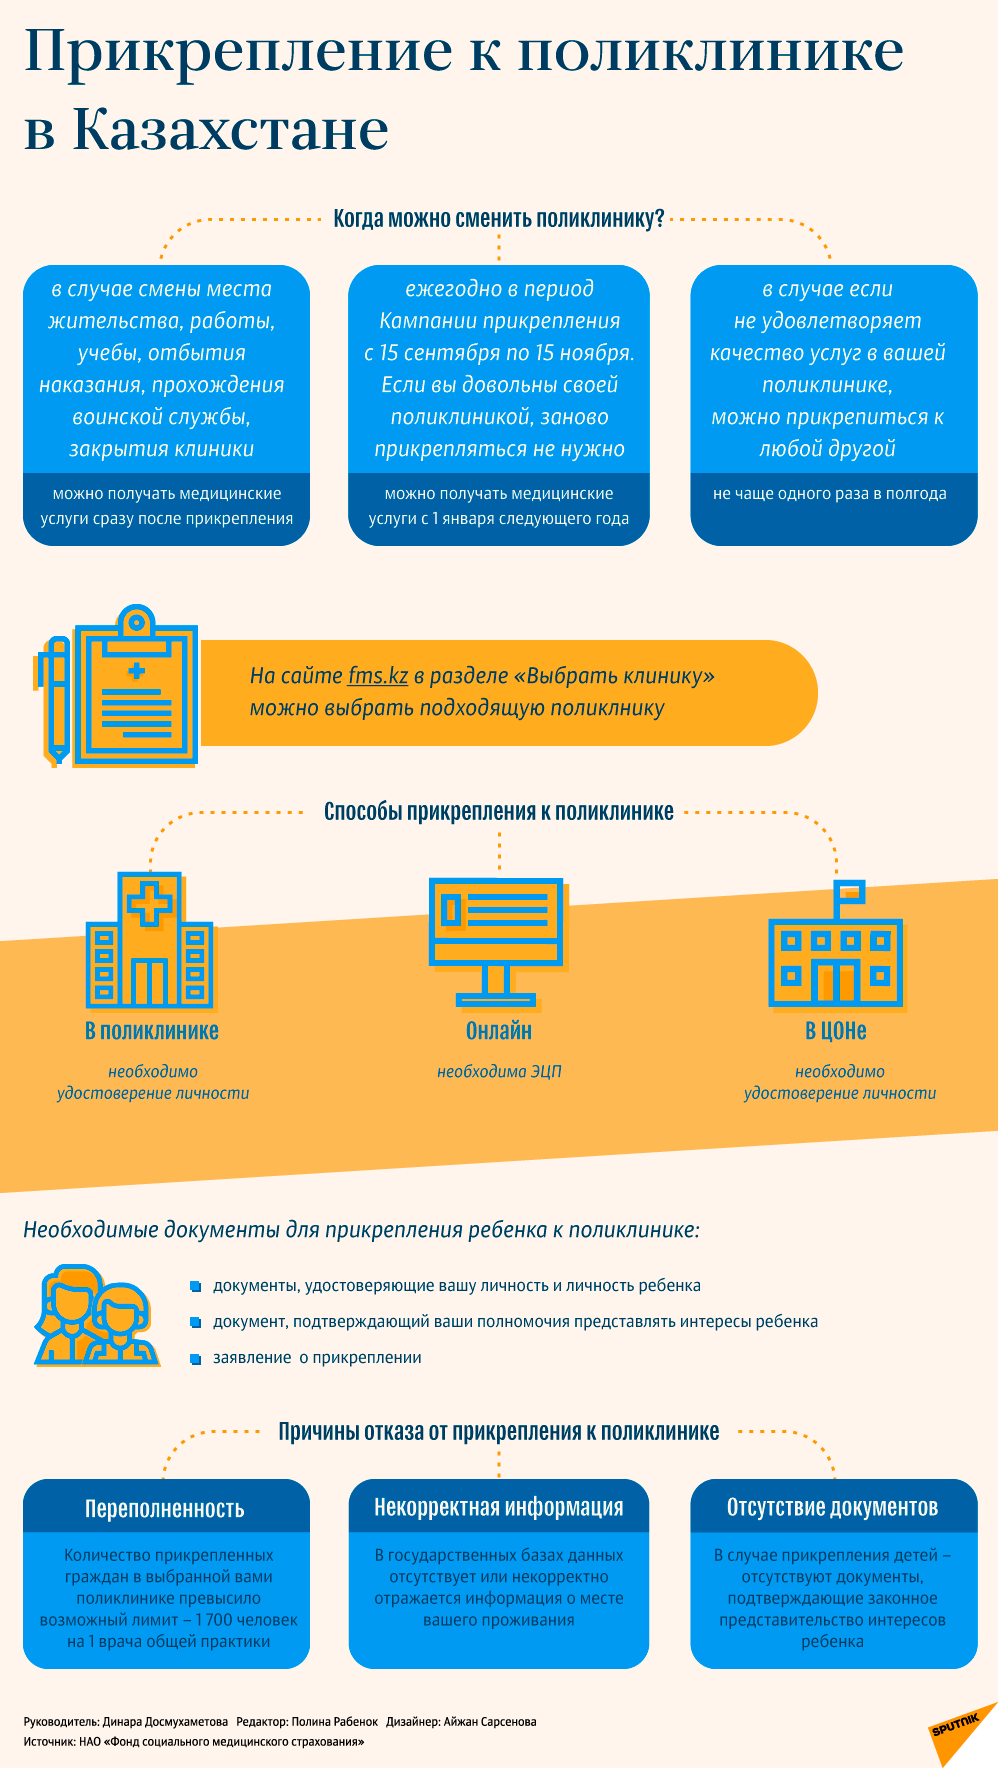 Прикрепление к поликлинике - инфографика - Sputnik Казахстан